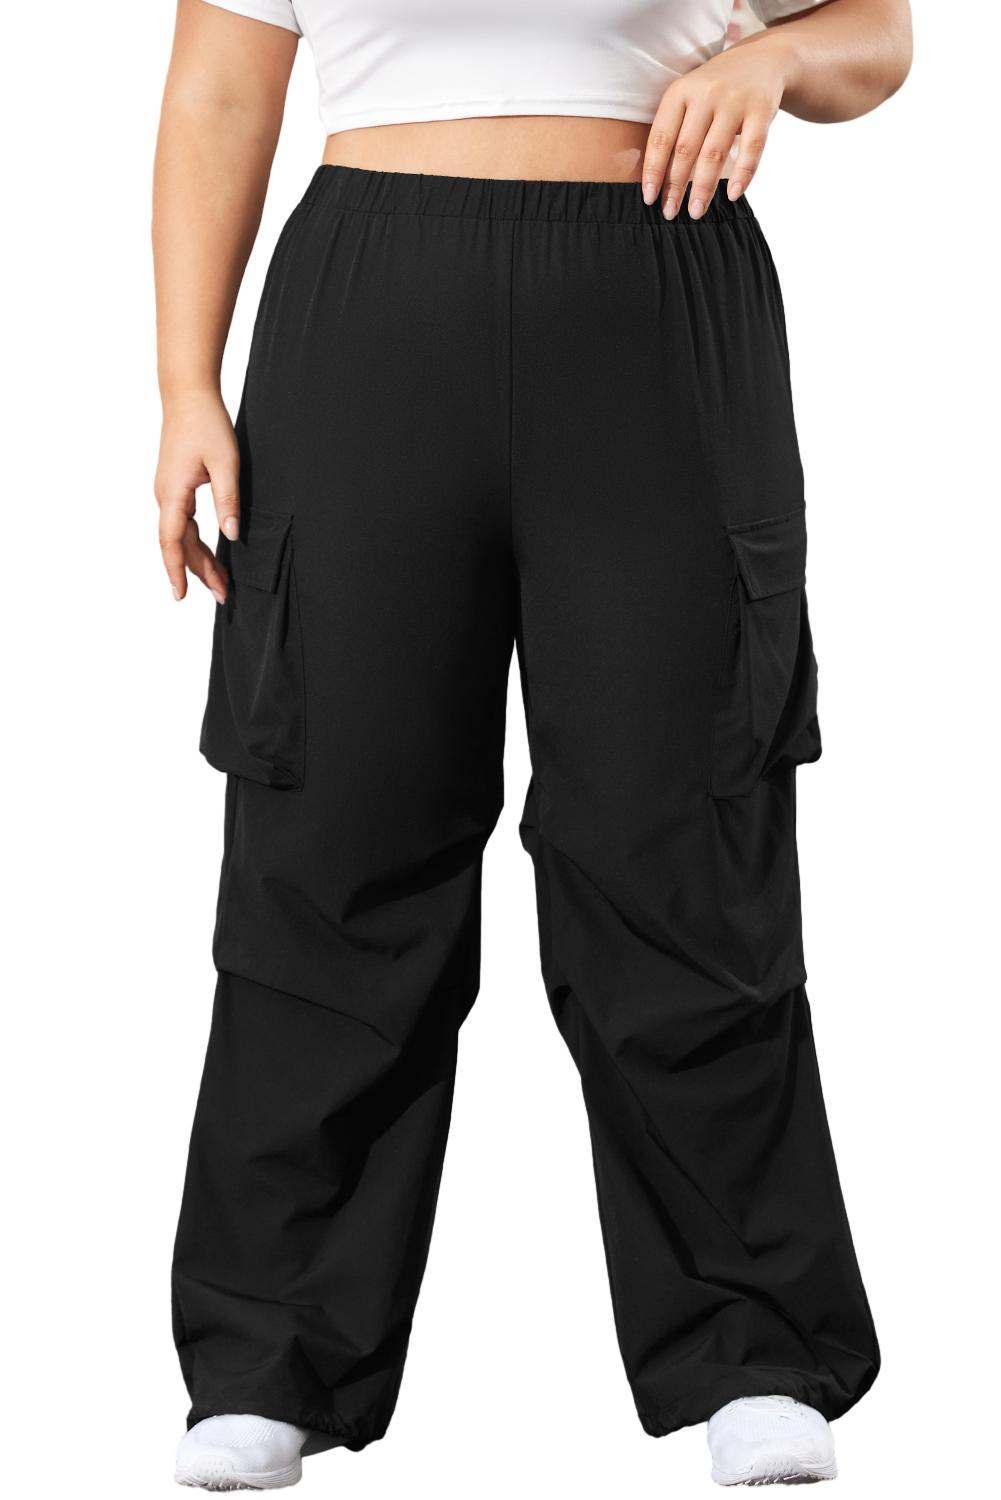 Crne kargo hlače s preklopnim džepom i elastičnim pojasom veće veličine